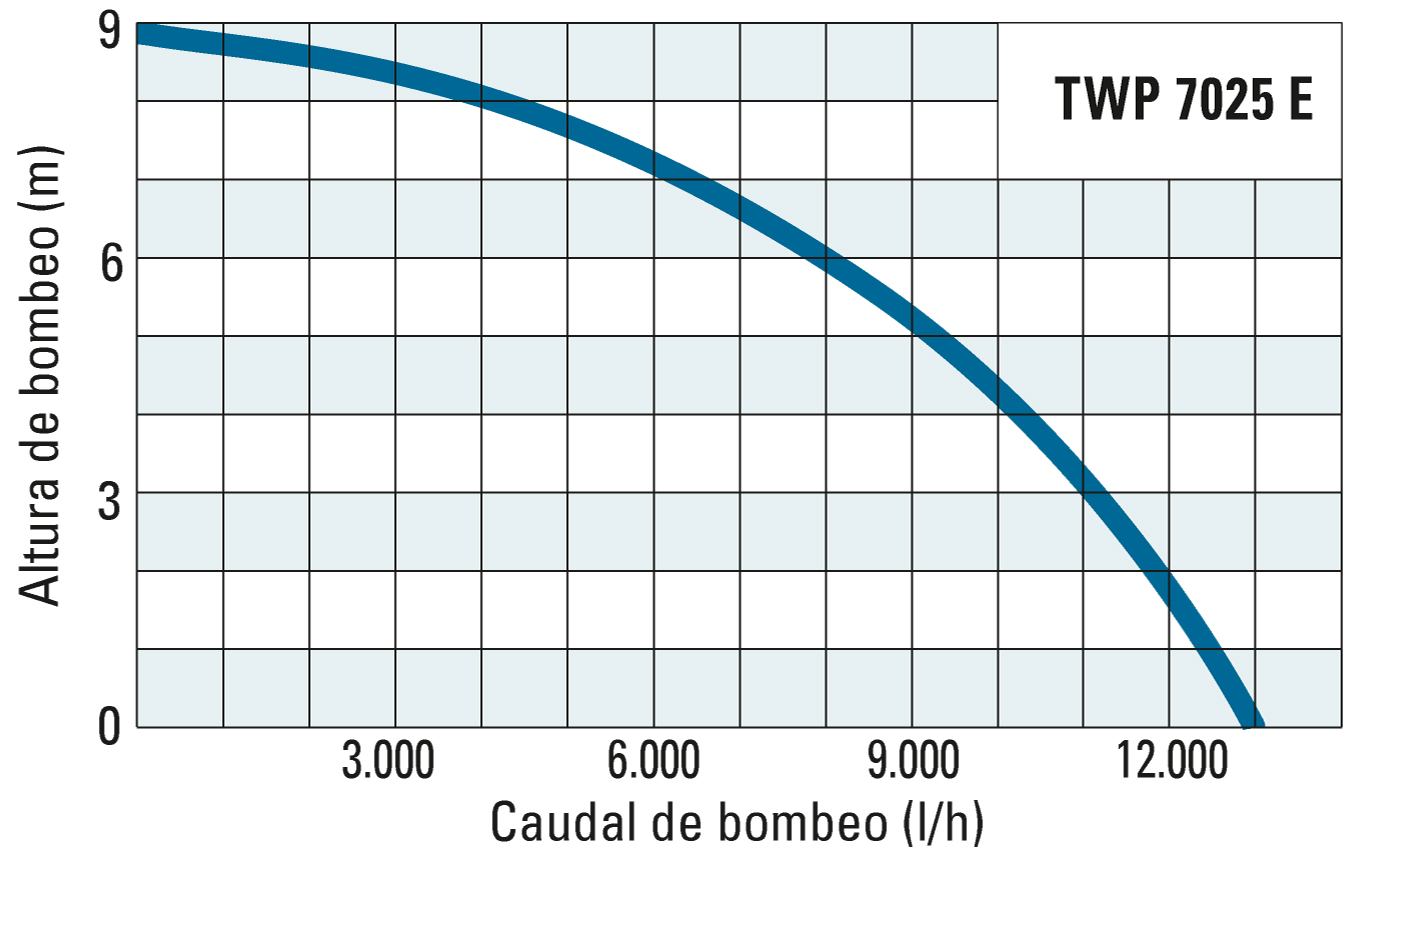 Altura de bombeo y caudal de bombeo de la TWP 7025 E